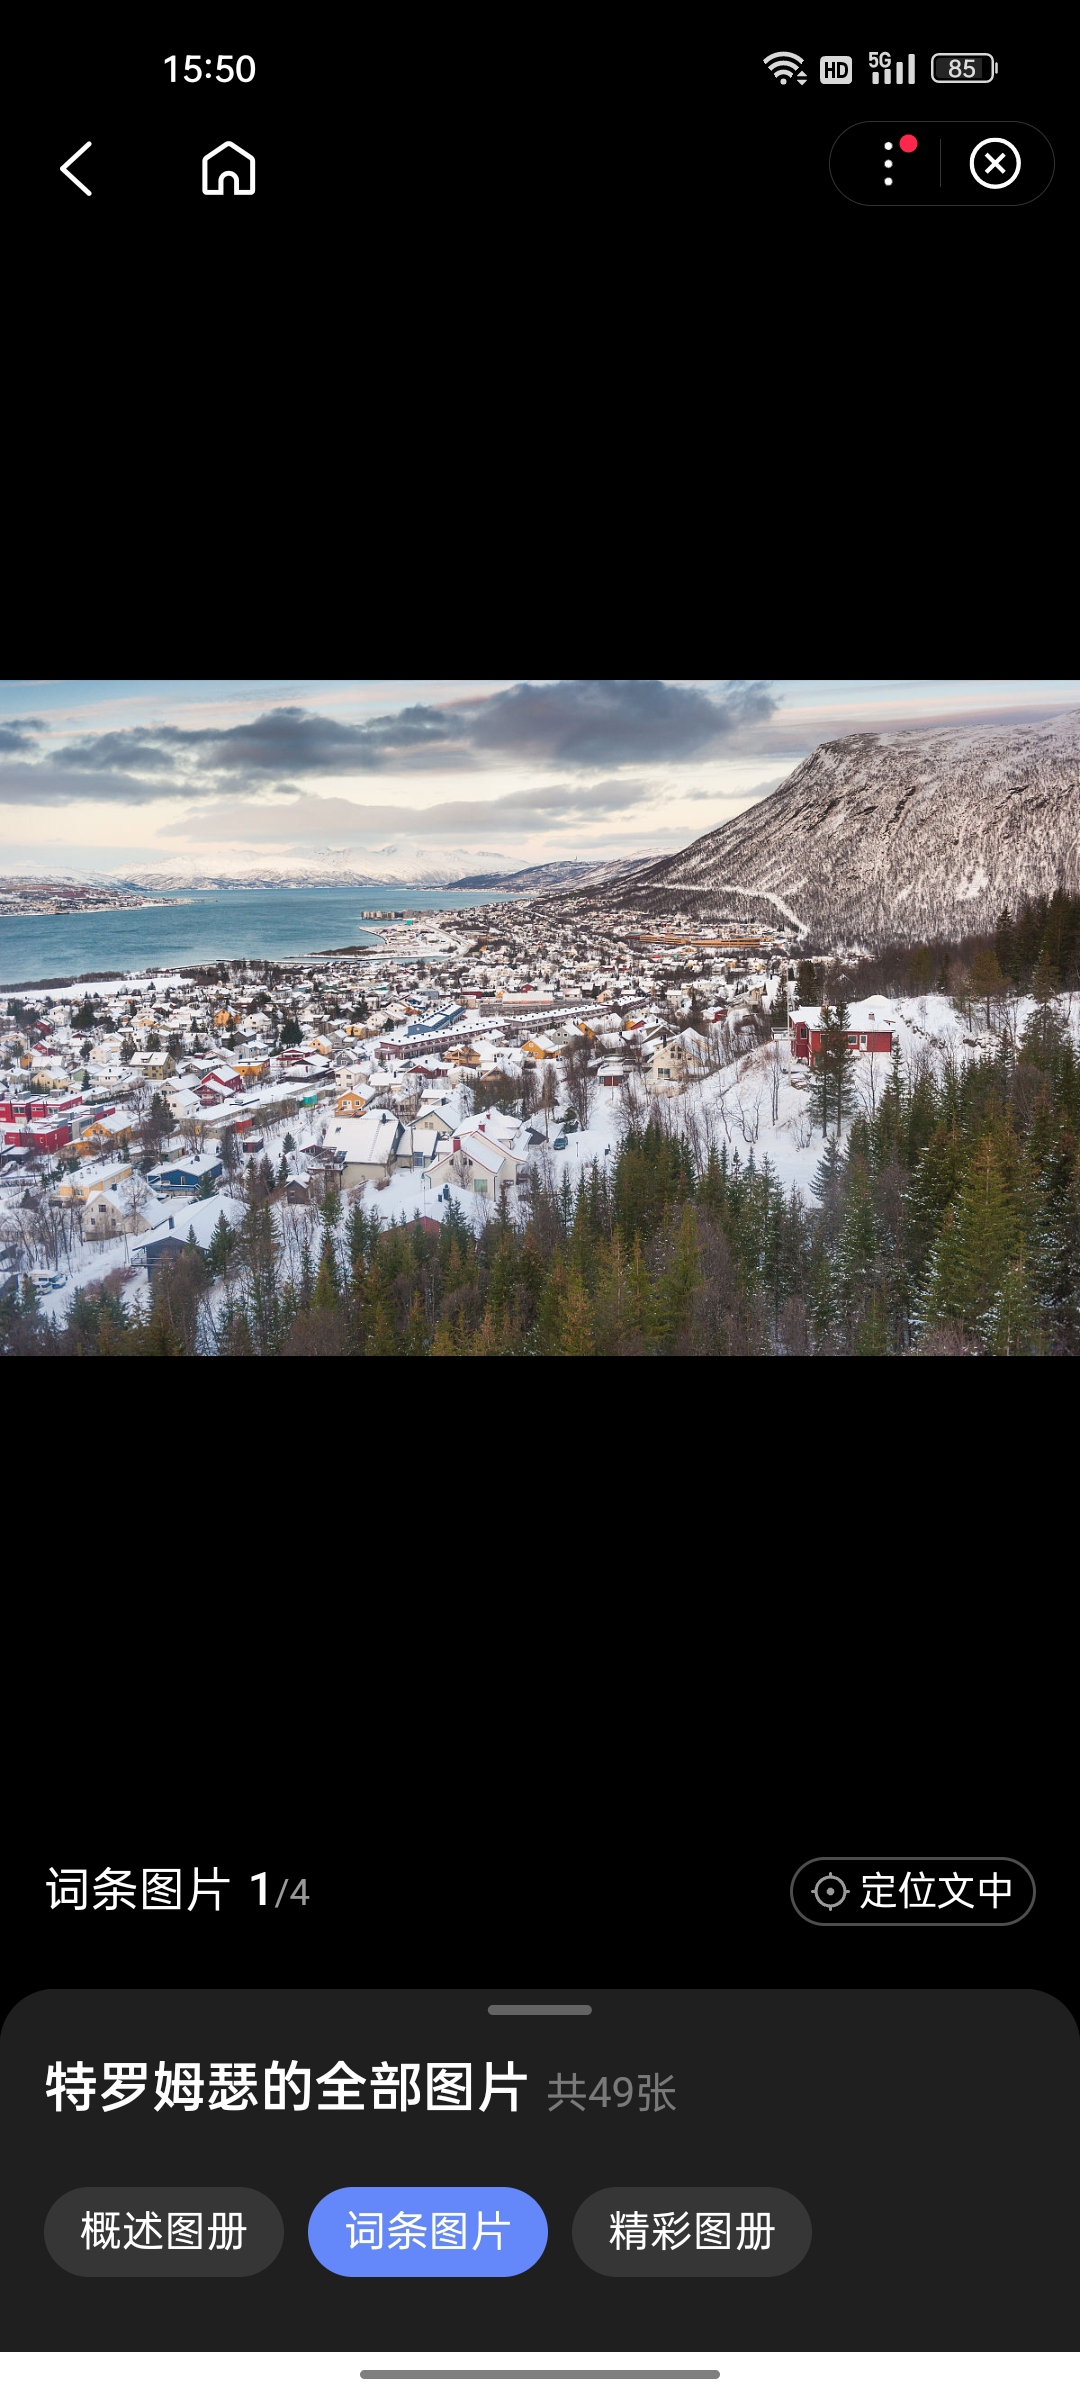 特罗姆瑟（挪威语：Tromsø），是挪威特罗姆斯郡首府，也是挪威北部最大港口城市。其地理位置靠近欧洲